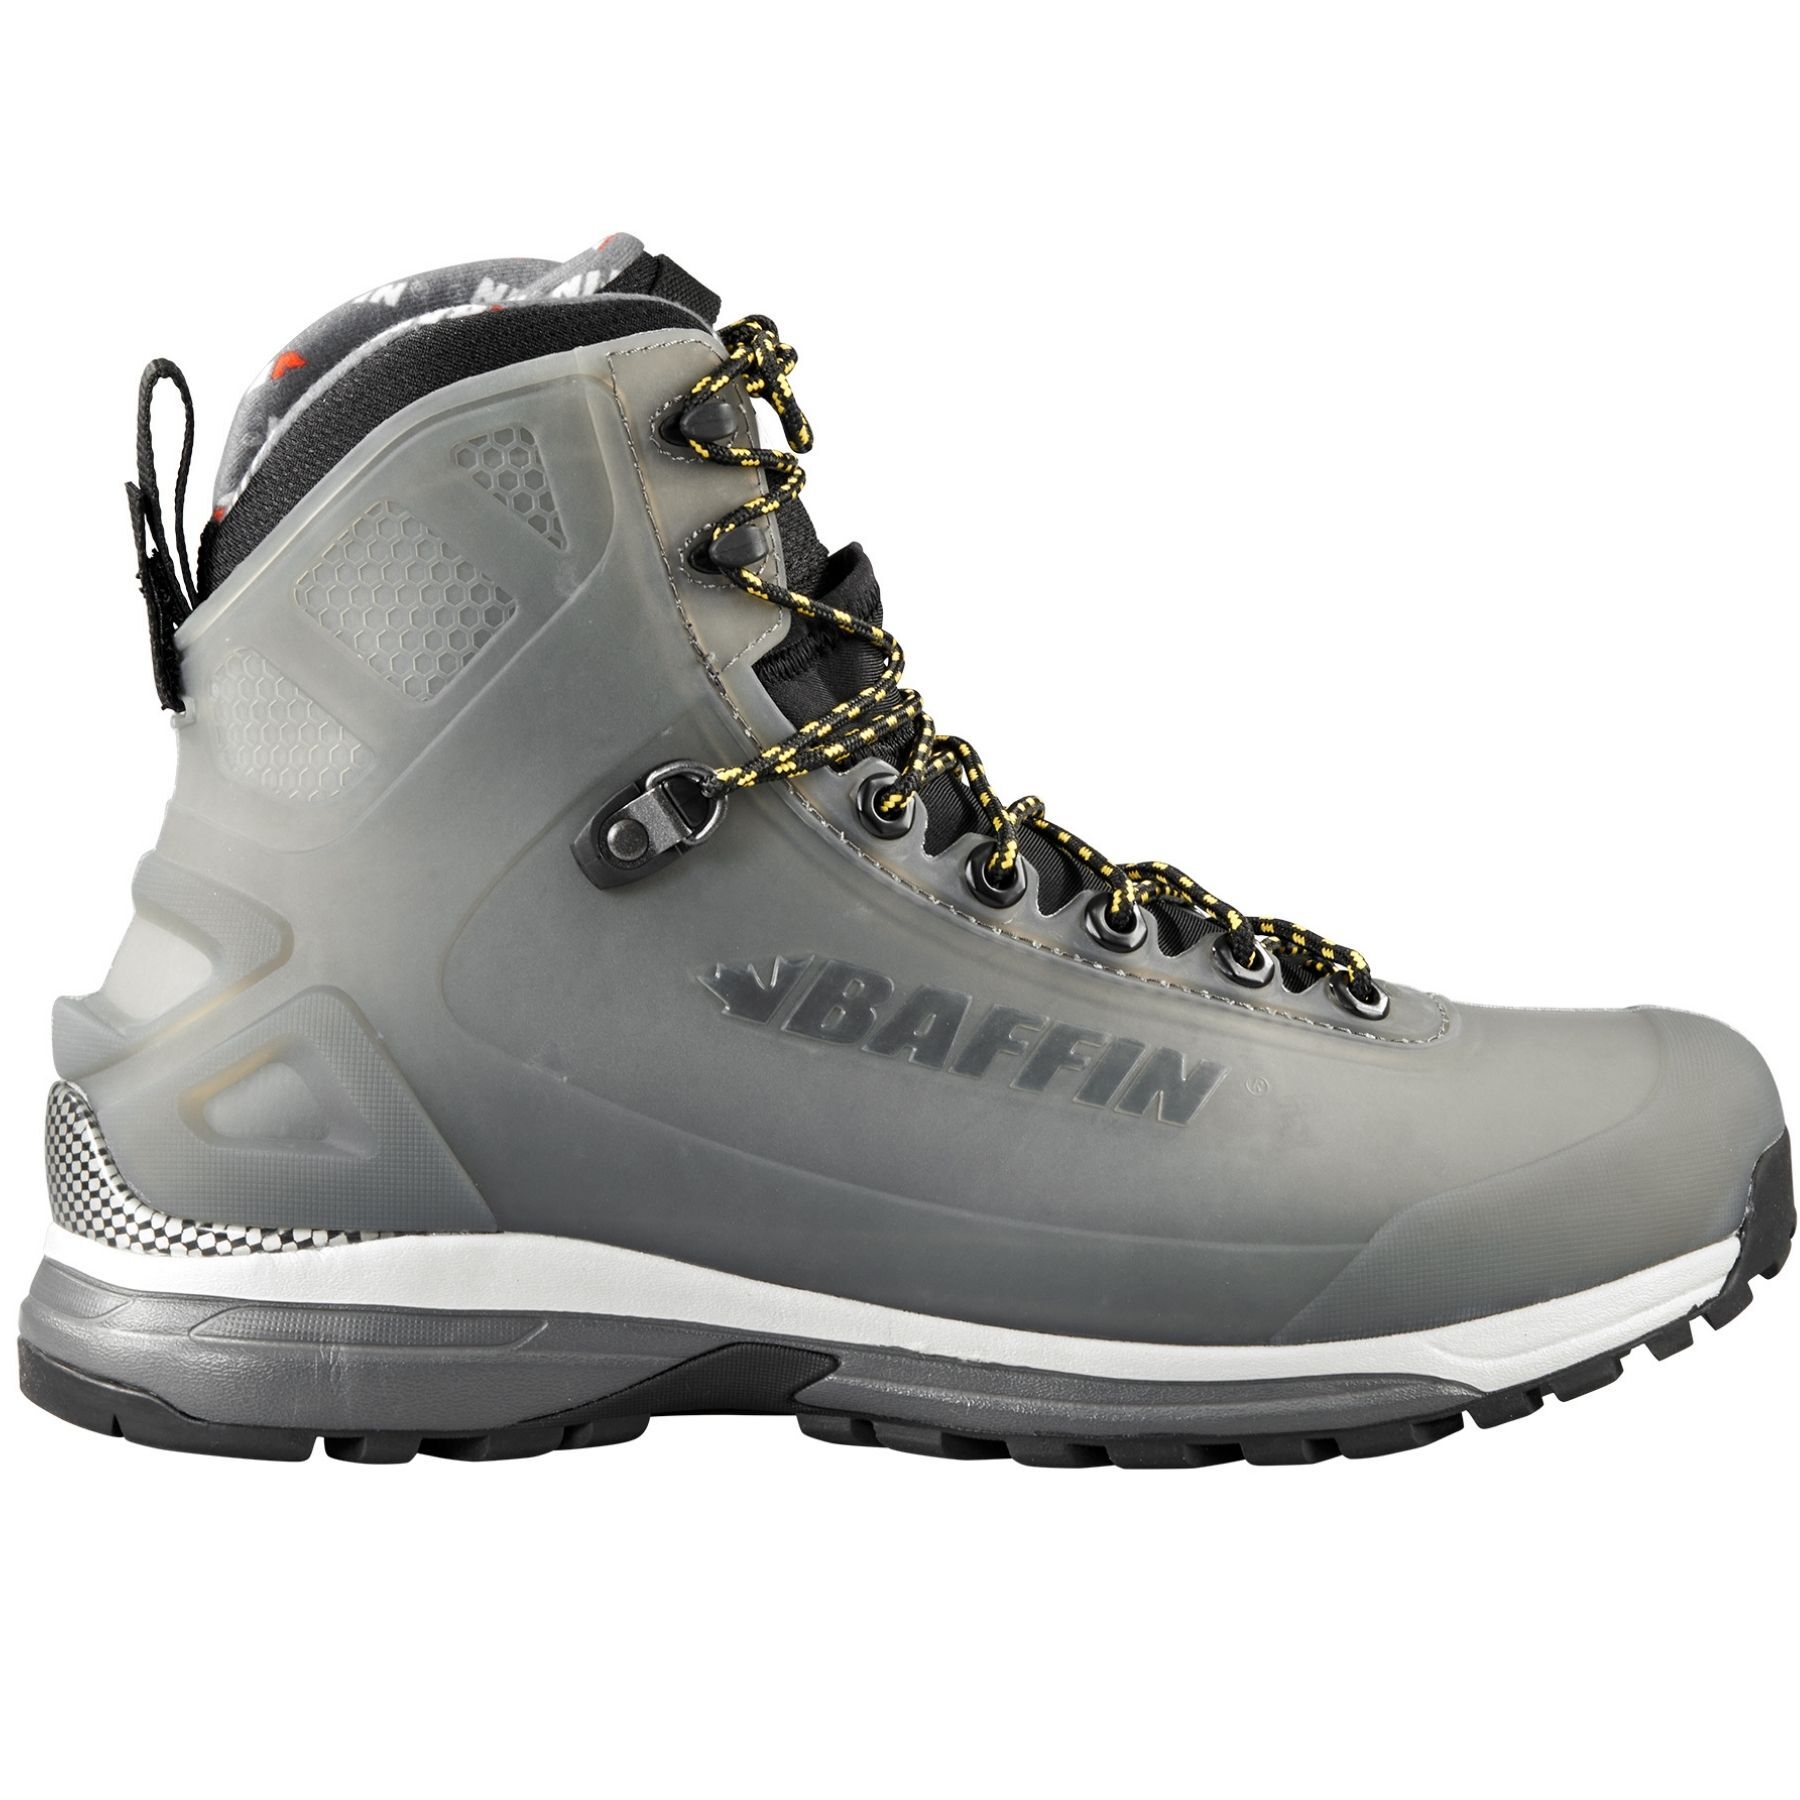 Baffin Borealis - Walking Boots - Men's